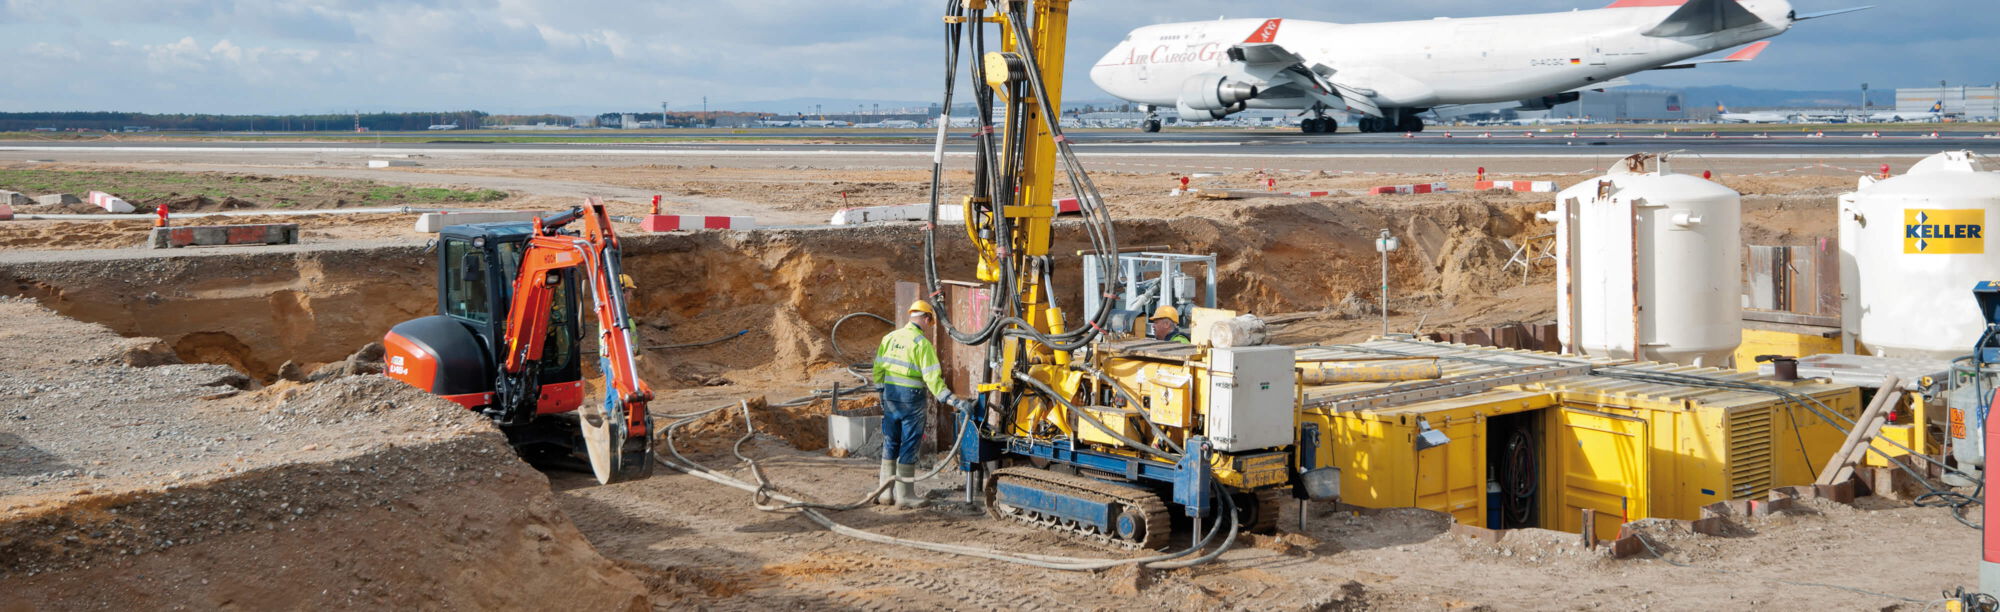 Baustelle auf Flughafen mit Flugzeug